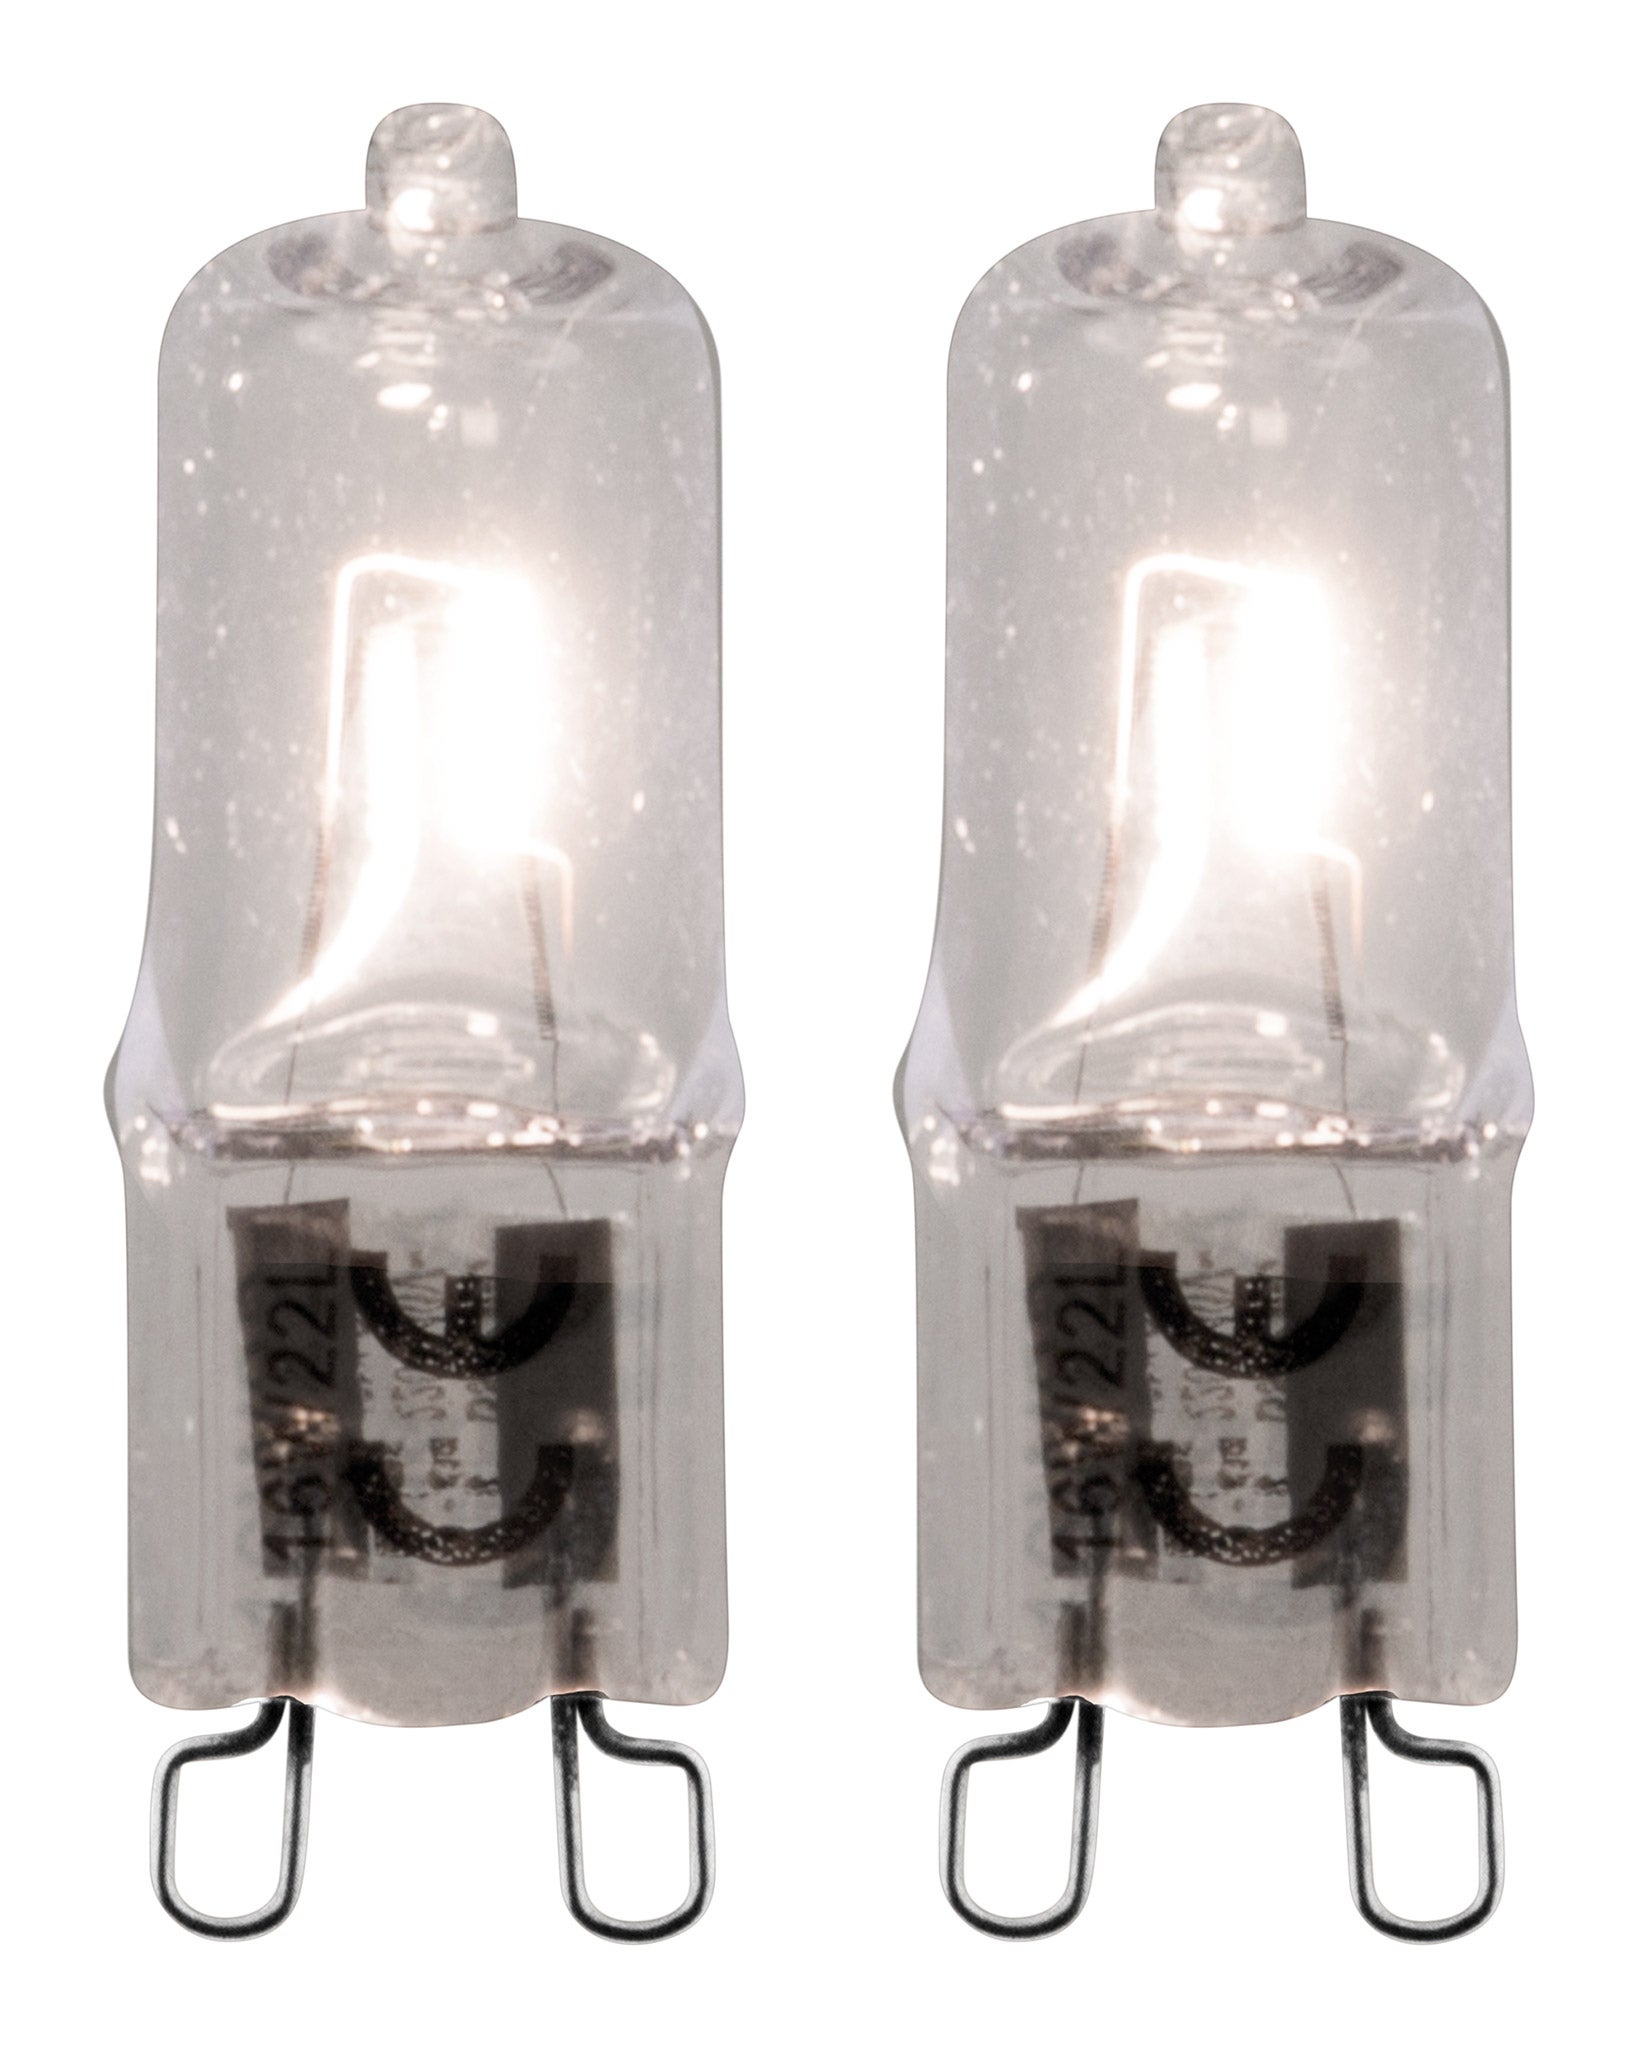 4 Ampoule Halogene G9  28 w = 37 w Clear Lamp LSC 2000 H top qualité 